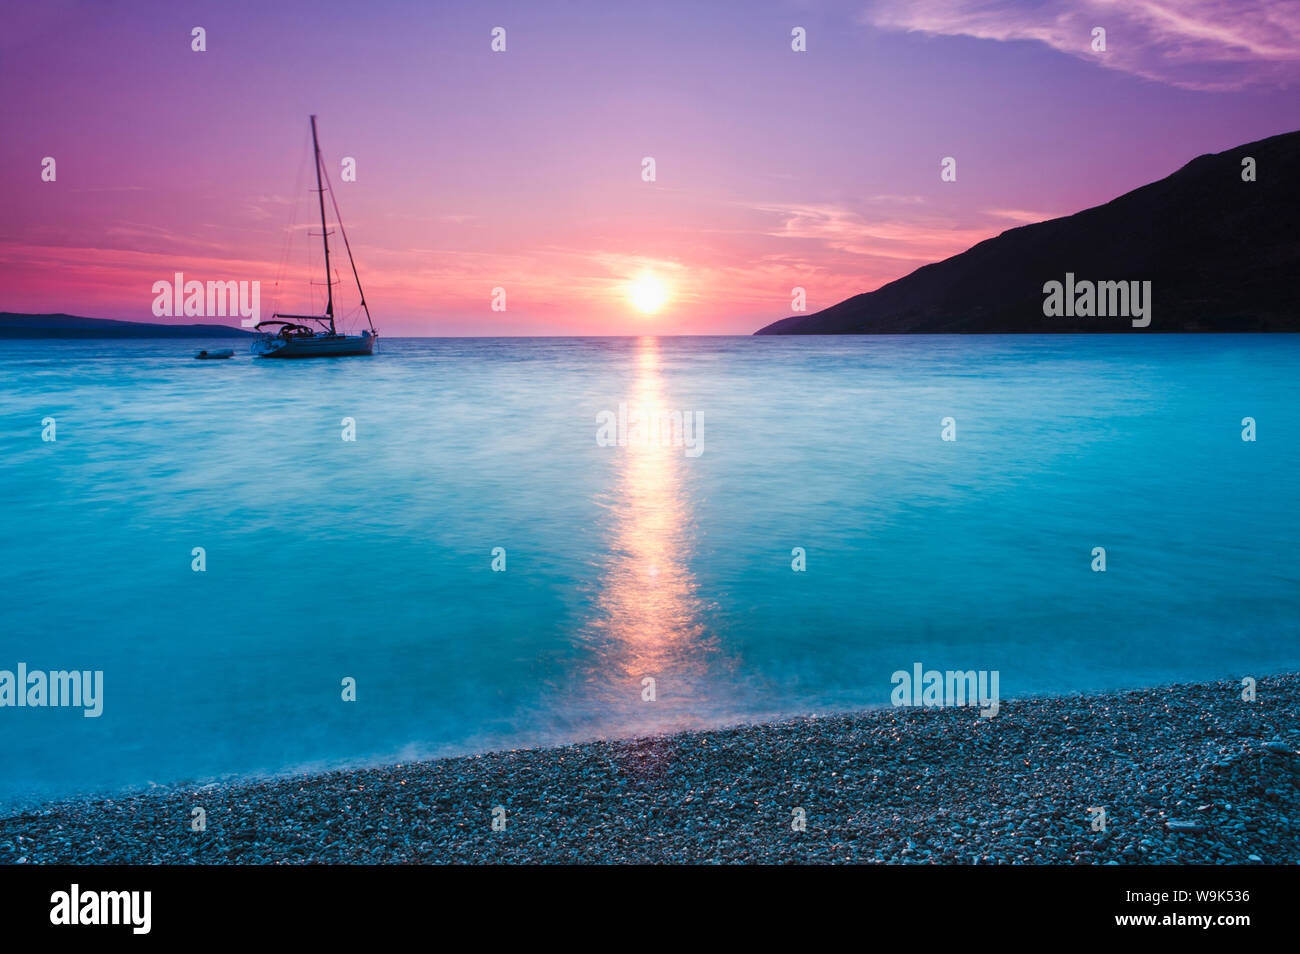 Mar Adriático, frente a la playa de Zlatni Rat al atardecer, Bol, la isla de Brac, la costa Dálmata, Croacia, Europa Foto de stock